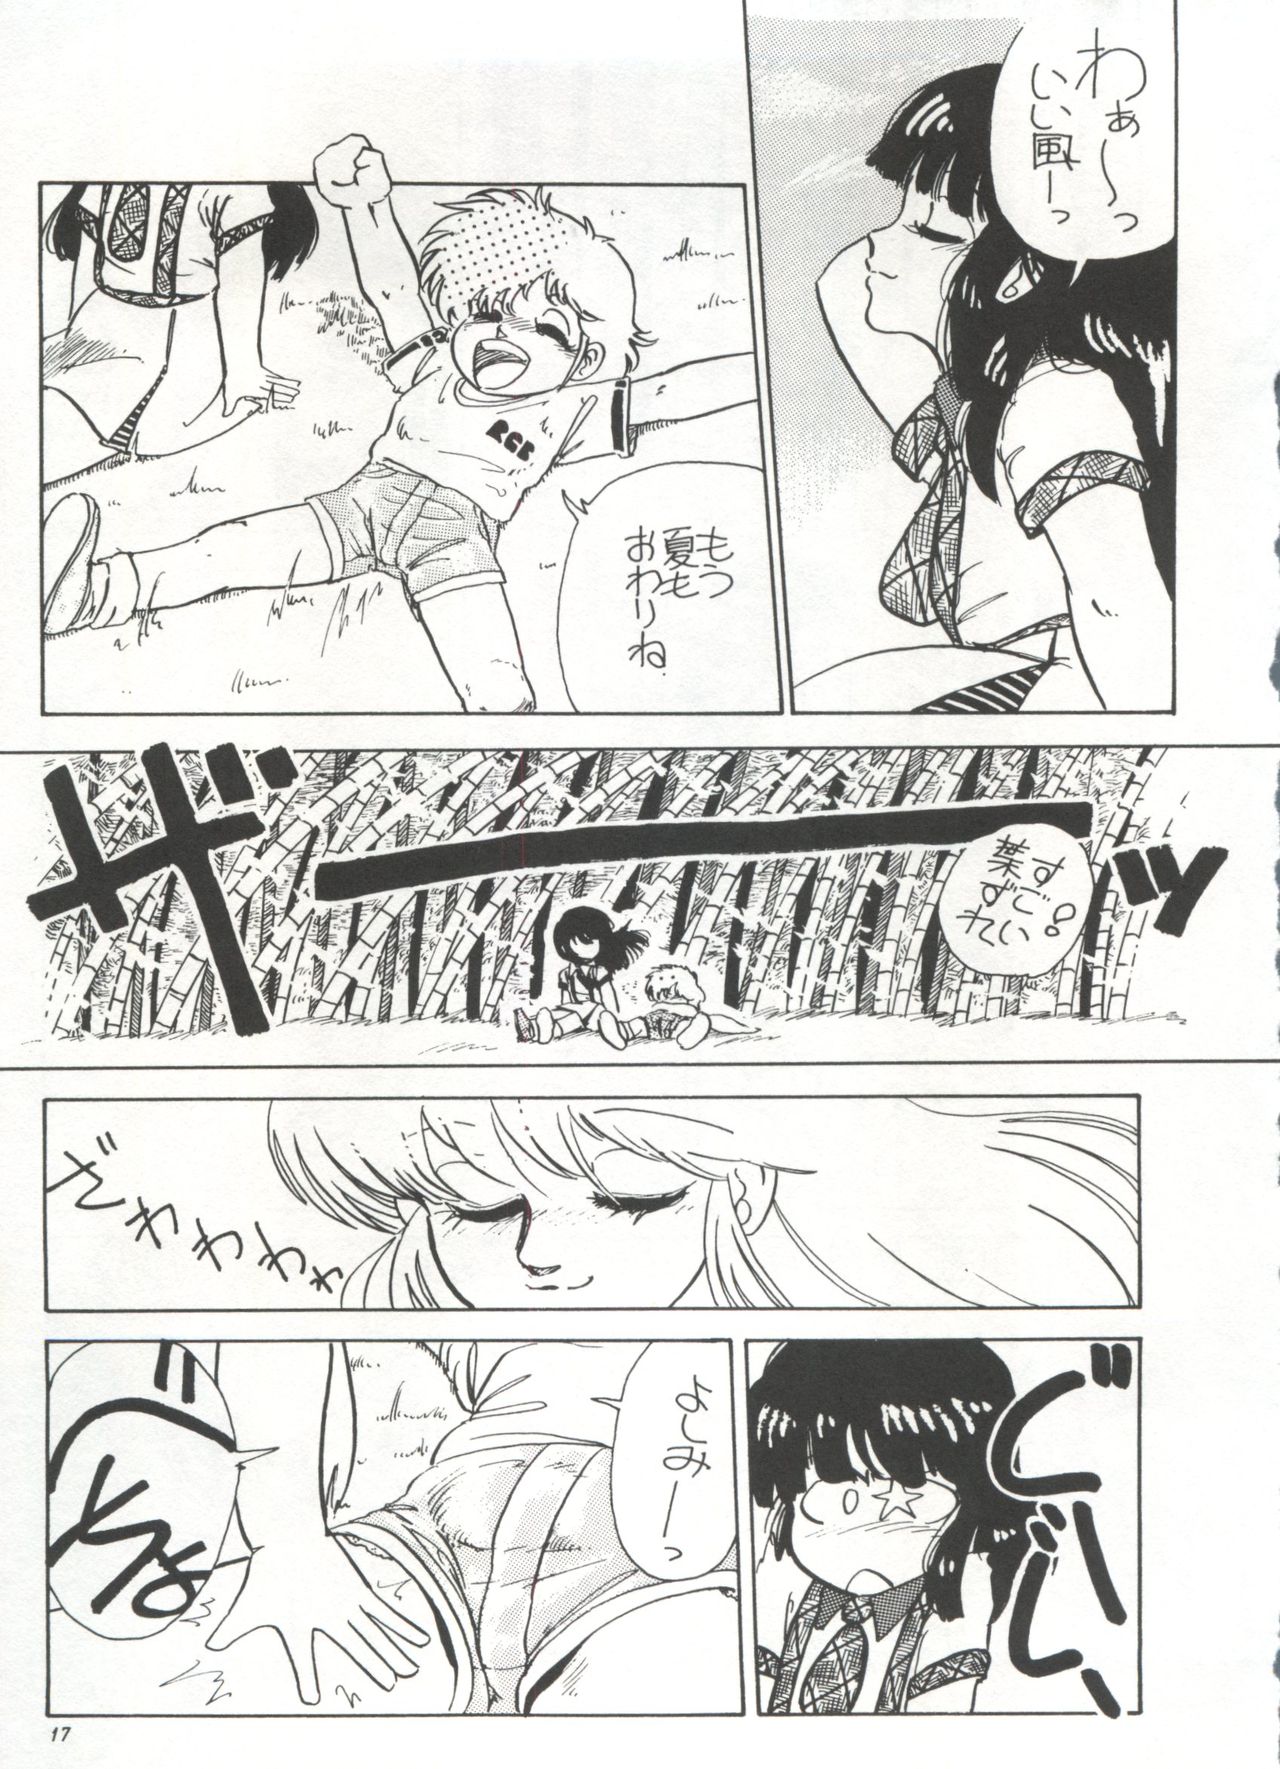 [Anthology] Bishoujo Shoukougun 1 Lolita Syndrome (Various) page 20 full